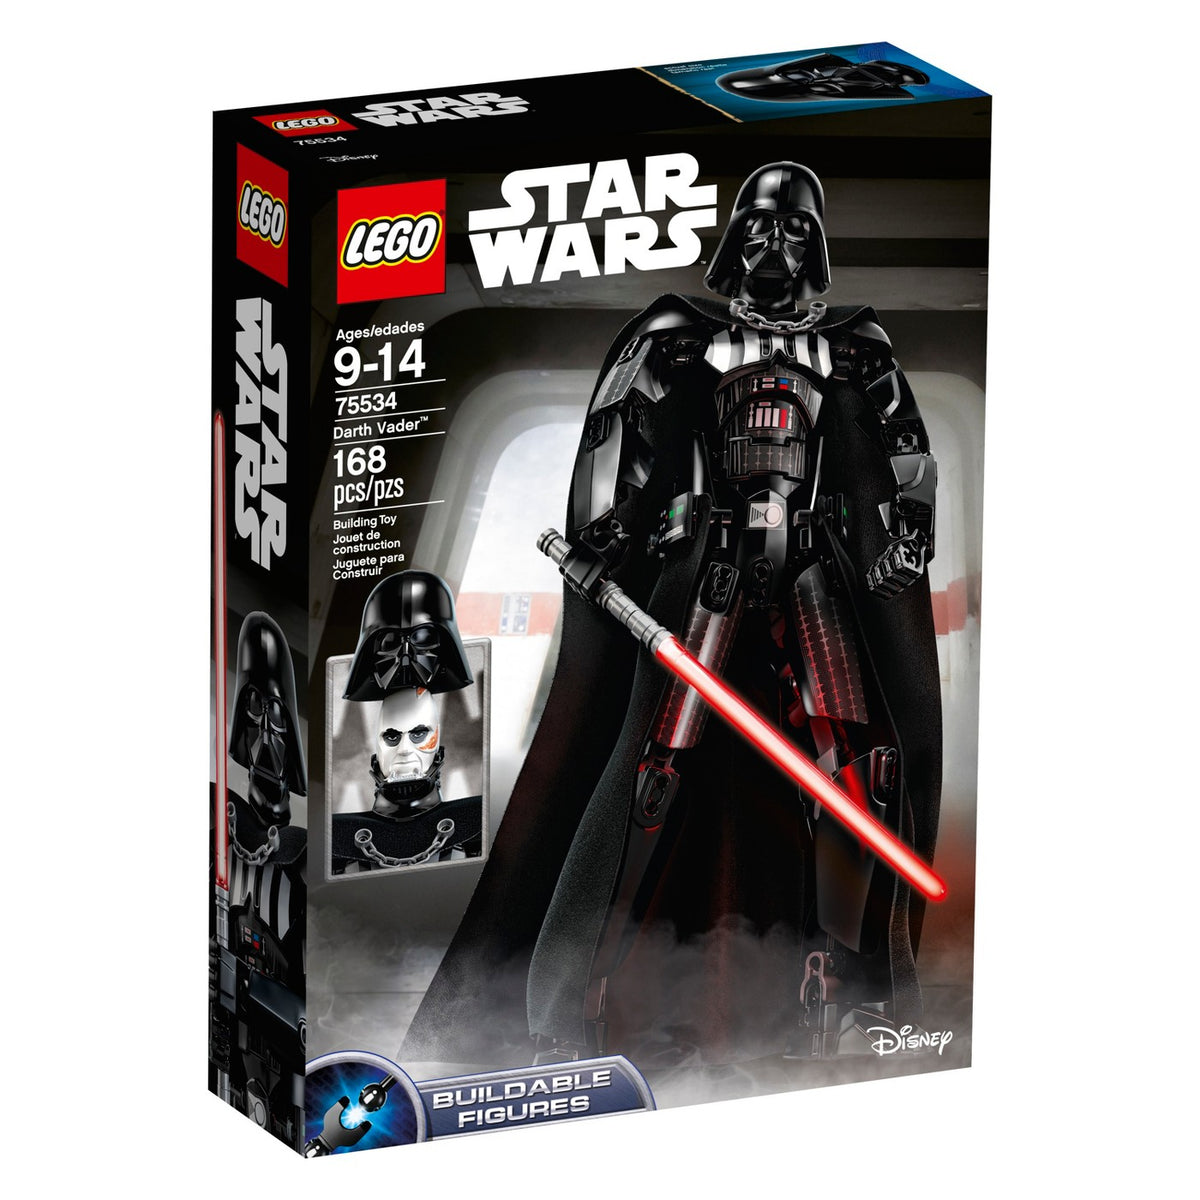 Star Wars Luke Skywalker Darth Vader Set LEGO 66536, 57% OFF